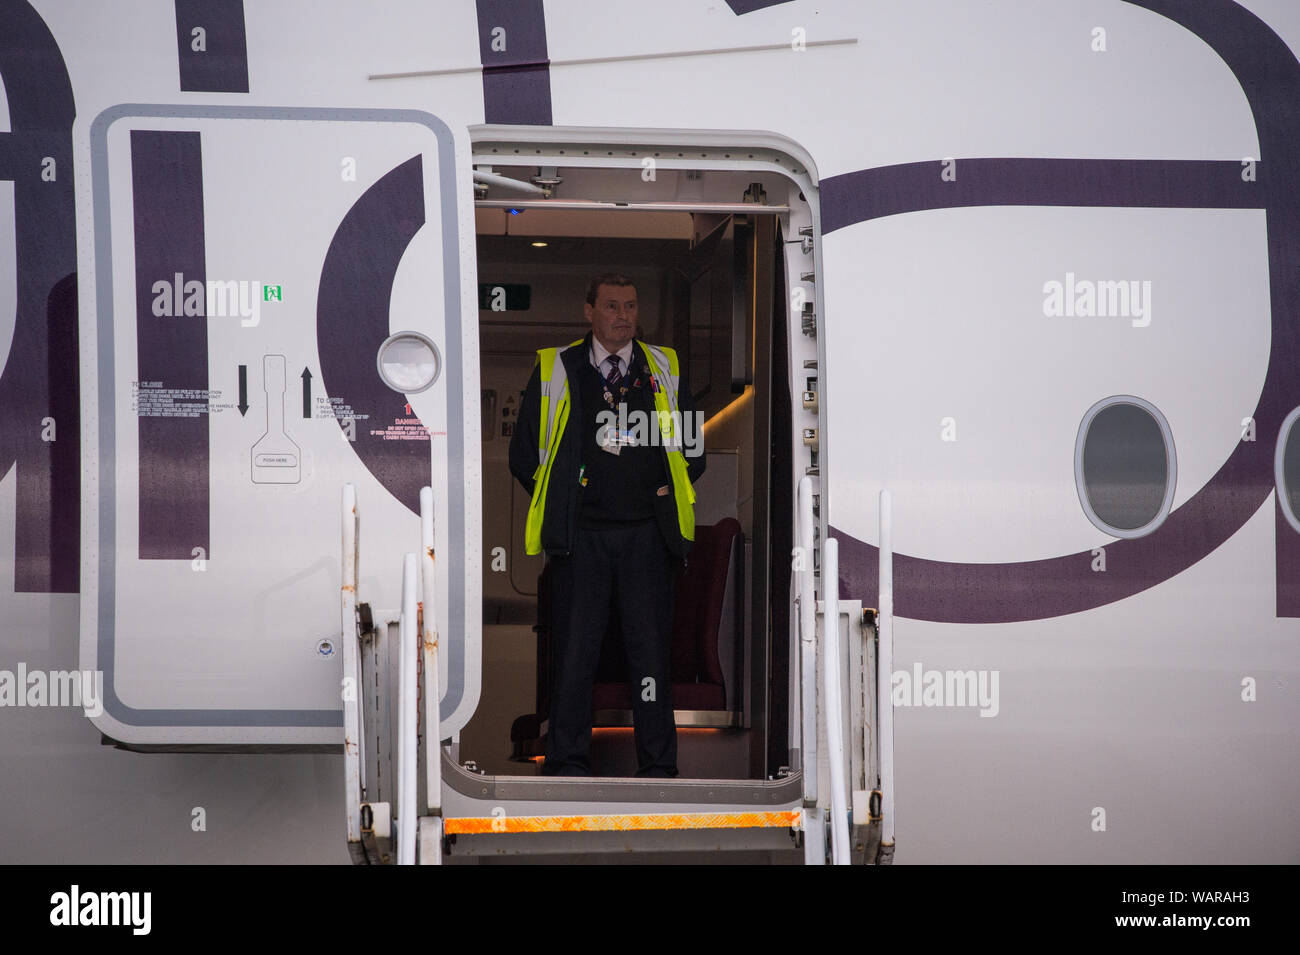 Glasgow, Regno Unito. Il 21 agosto 2019. Virgin Atlantic Airbus A350-1000 aeromobile visto all'Aeroporto Internazionale di Glasgow per il pilota di formazione. Vergine del nuovo jumbo jet vanta una straordinaria nuova "loft' spazio sociale con divani in business class e ben adornata dalla registrazione G-VLUX. L'intero aeromobile avrà inoltre accesso a internet Wi-Fi ad alta velocità. Virgin Atlantic ha ordinato un totale di 12 Airbus A350-1000s. Essi sono tutti programmati per entrare a far parte della flotta dal 2021 in un ordine per un valore stimato di $ 4,4 miliardi di euro (£ 3,36 miliardi di euro). Il velivolo anche promette di essere fino al 30% più efficienti in termini di consumo di carburante sul risparmio di emissioni di CO2. Foto Stock